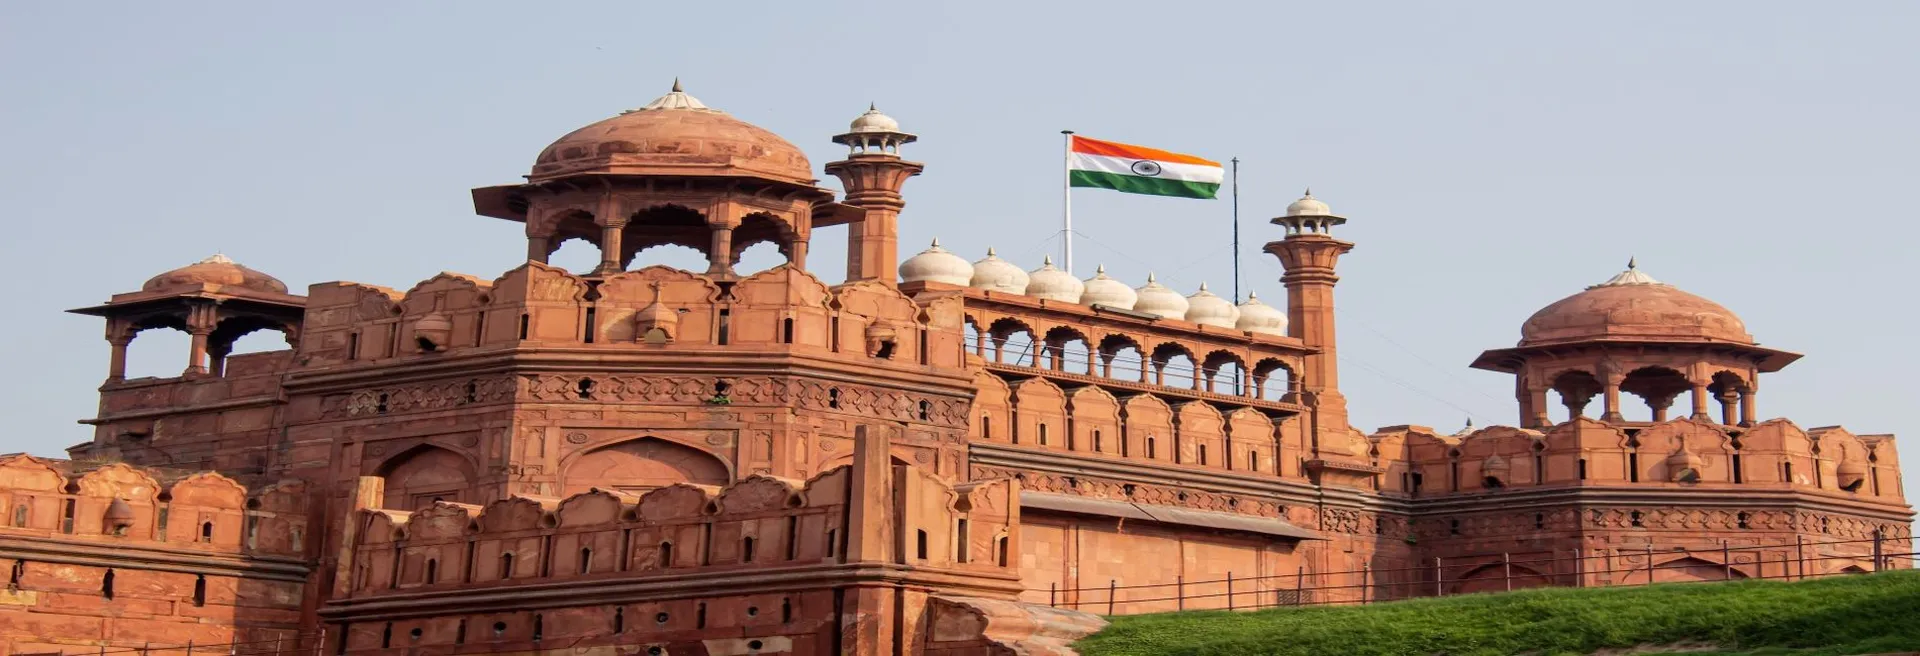 Explore Agra Fort 